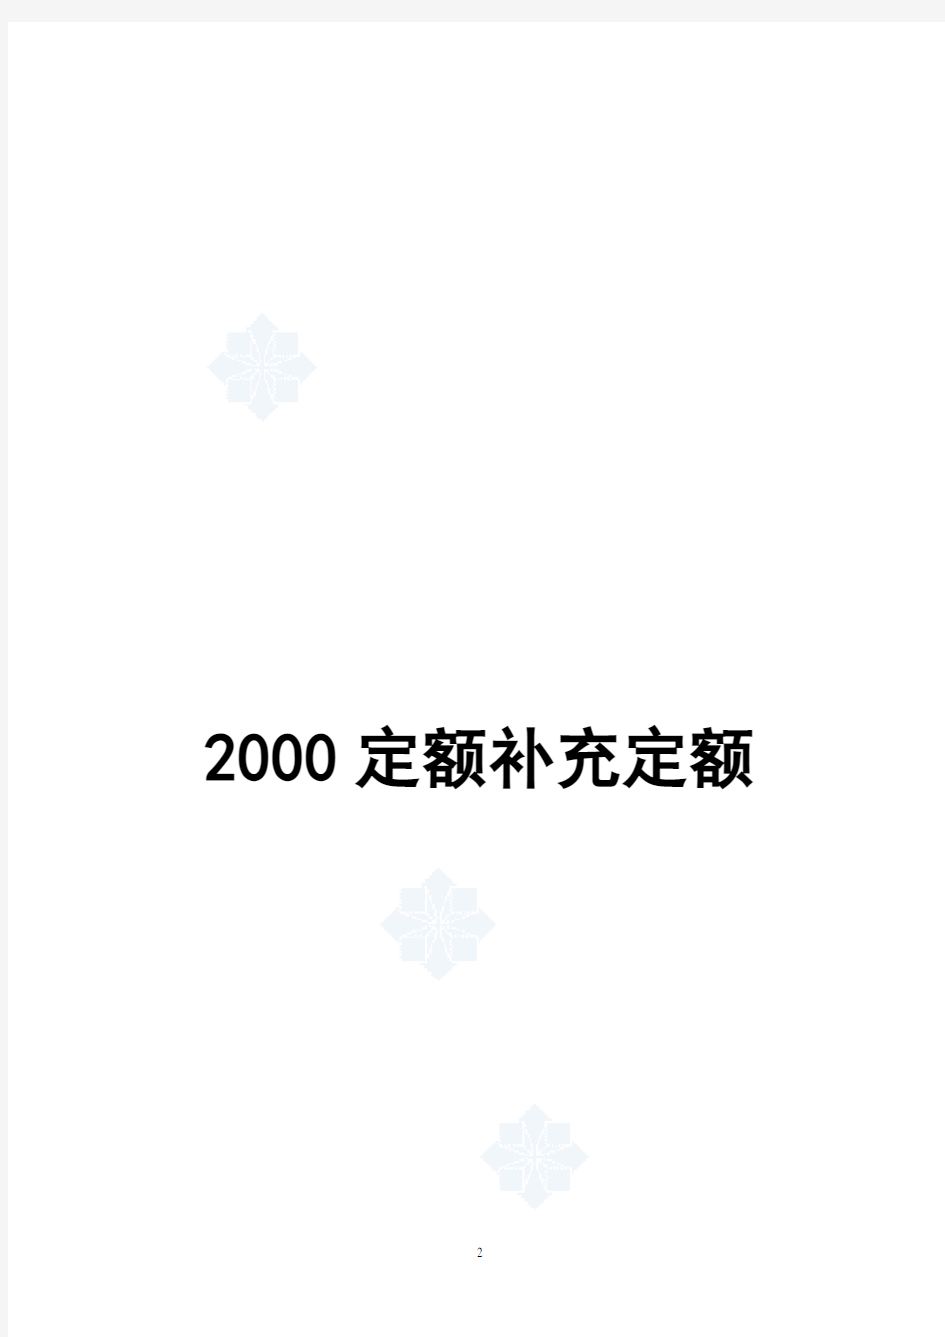 上海市建筑、装饰及房屋修缮工程预算定额(2000)补充定额